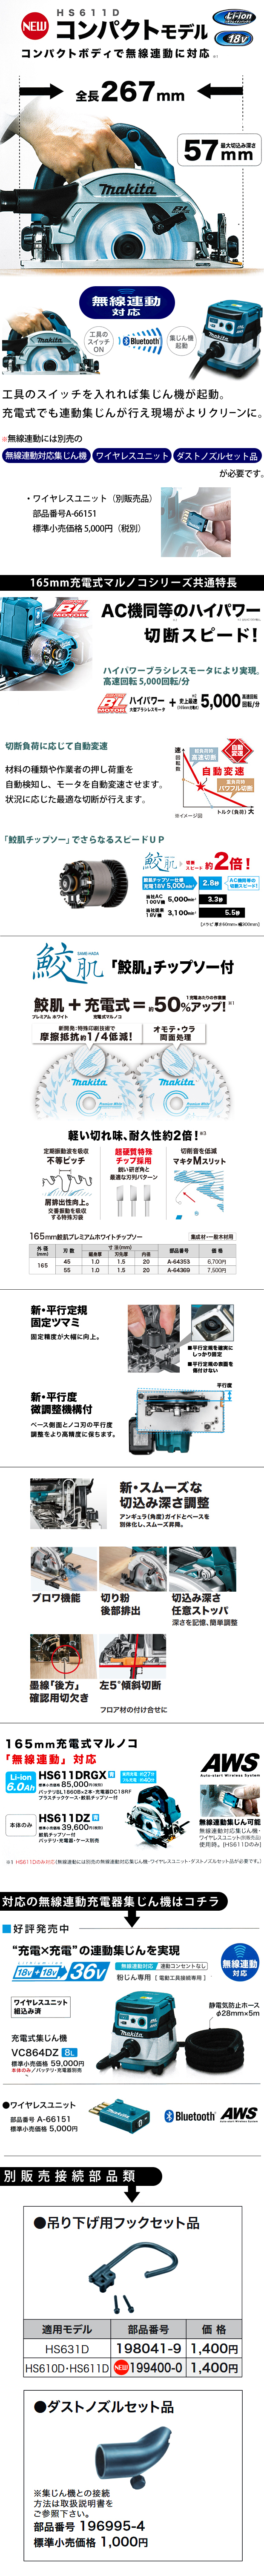 マキタ 165mm 充電式マルノコ HS611D【無線連動対応コンパクトモデル】